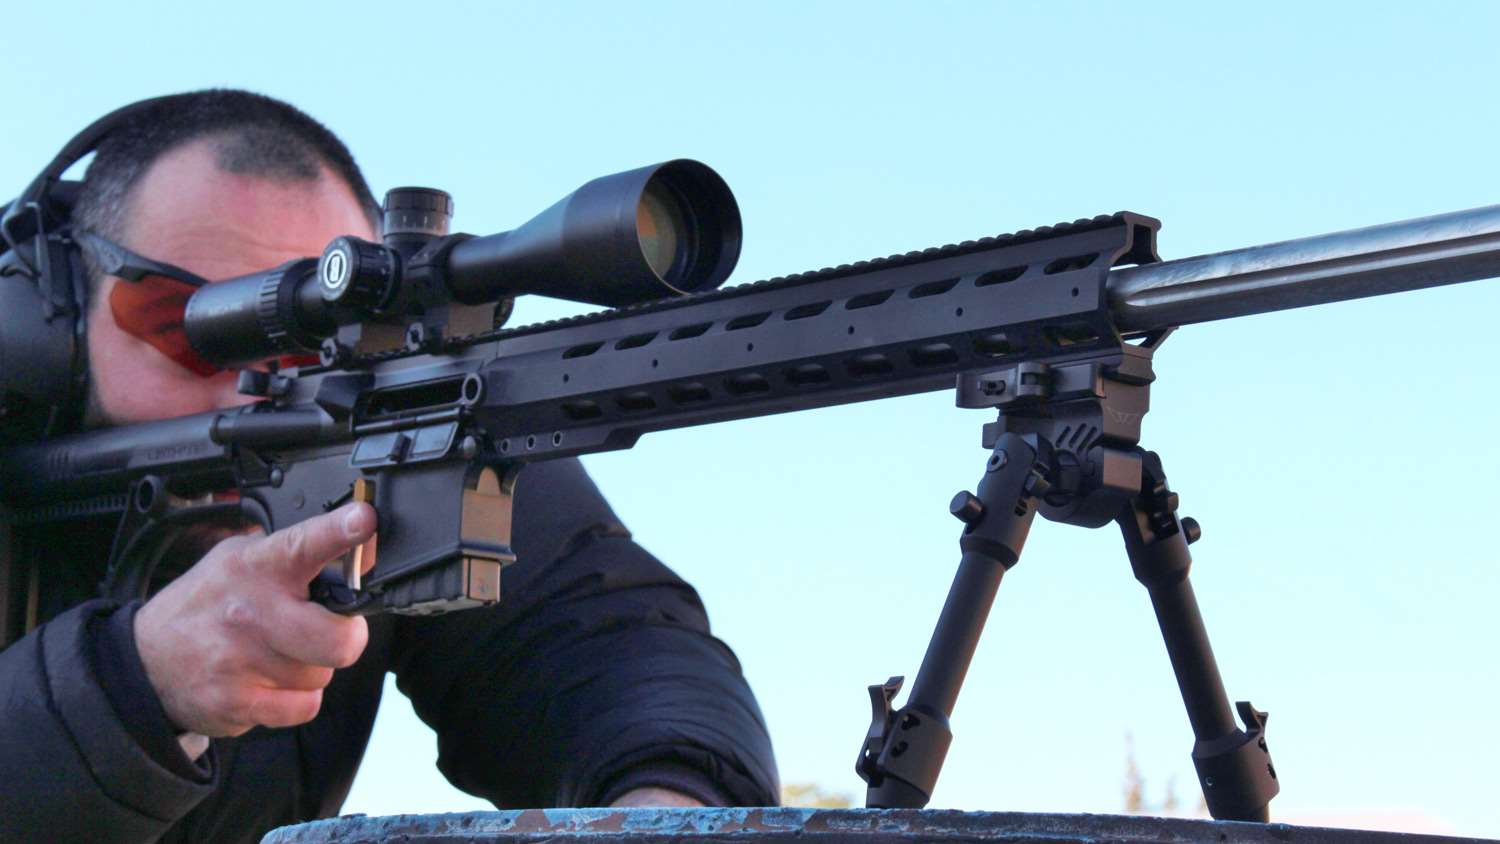 Bushnell Match Pro 6-24x50 mm riflescope